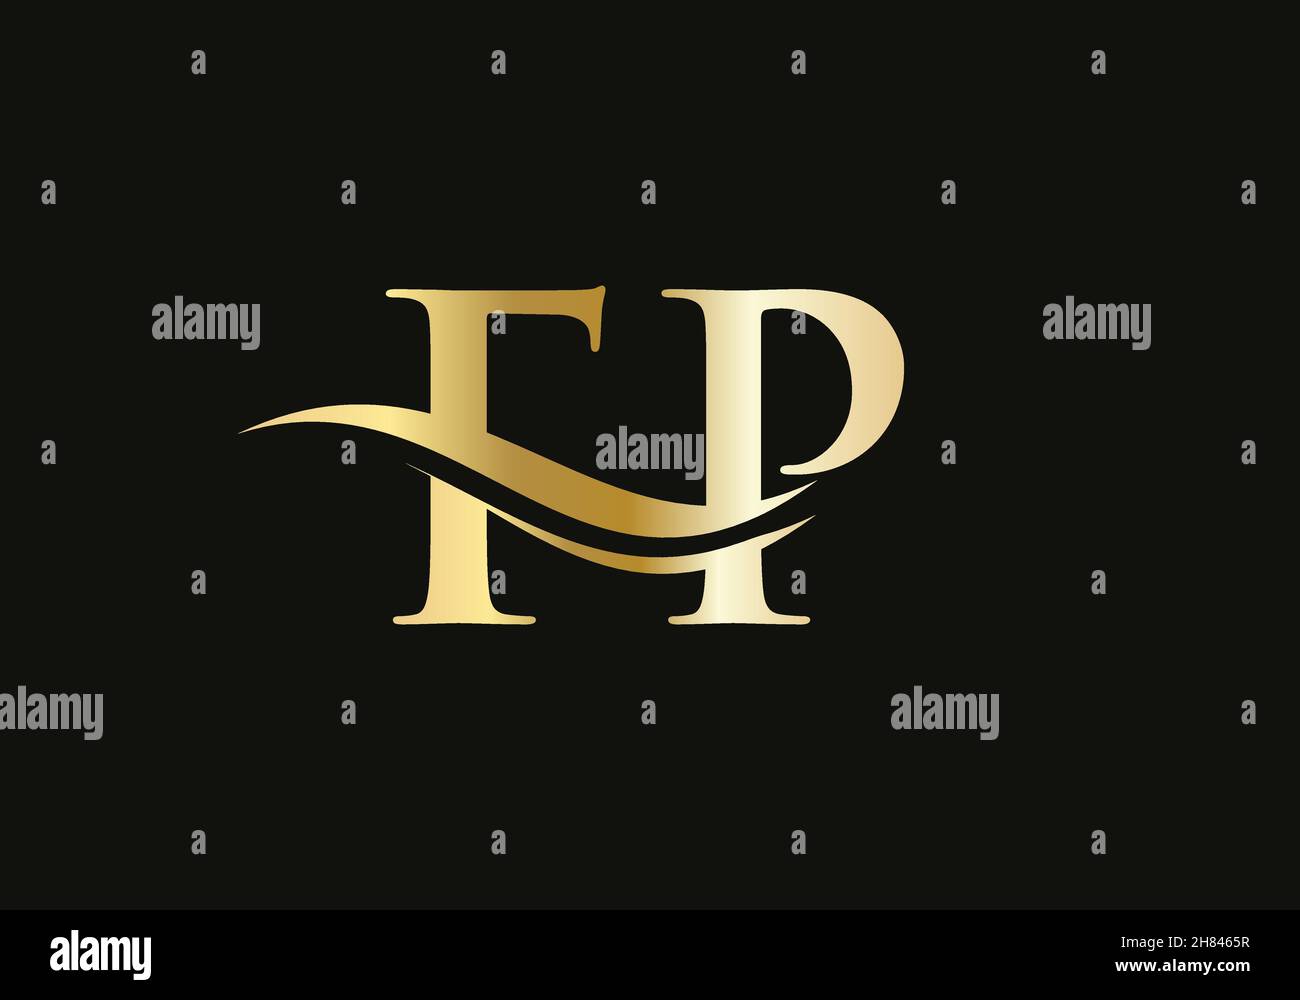 Elegant and stylish FP logo design for your company. FP letter logo. FP Logo for luxury branding. Stock Vector